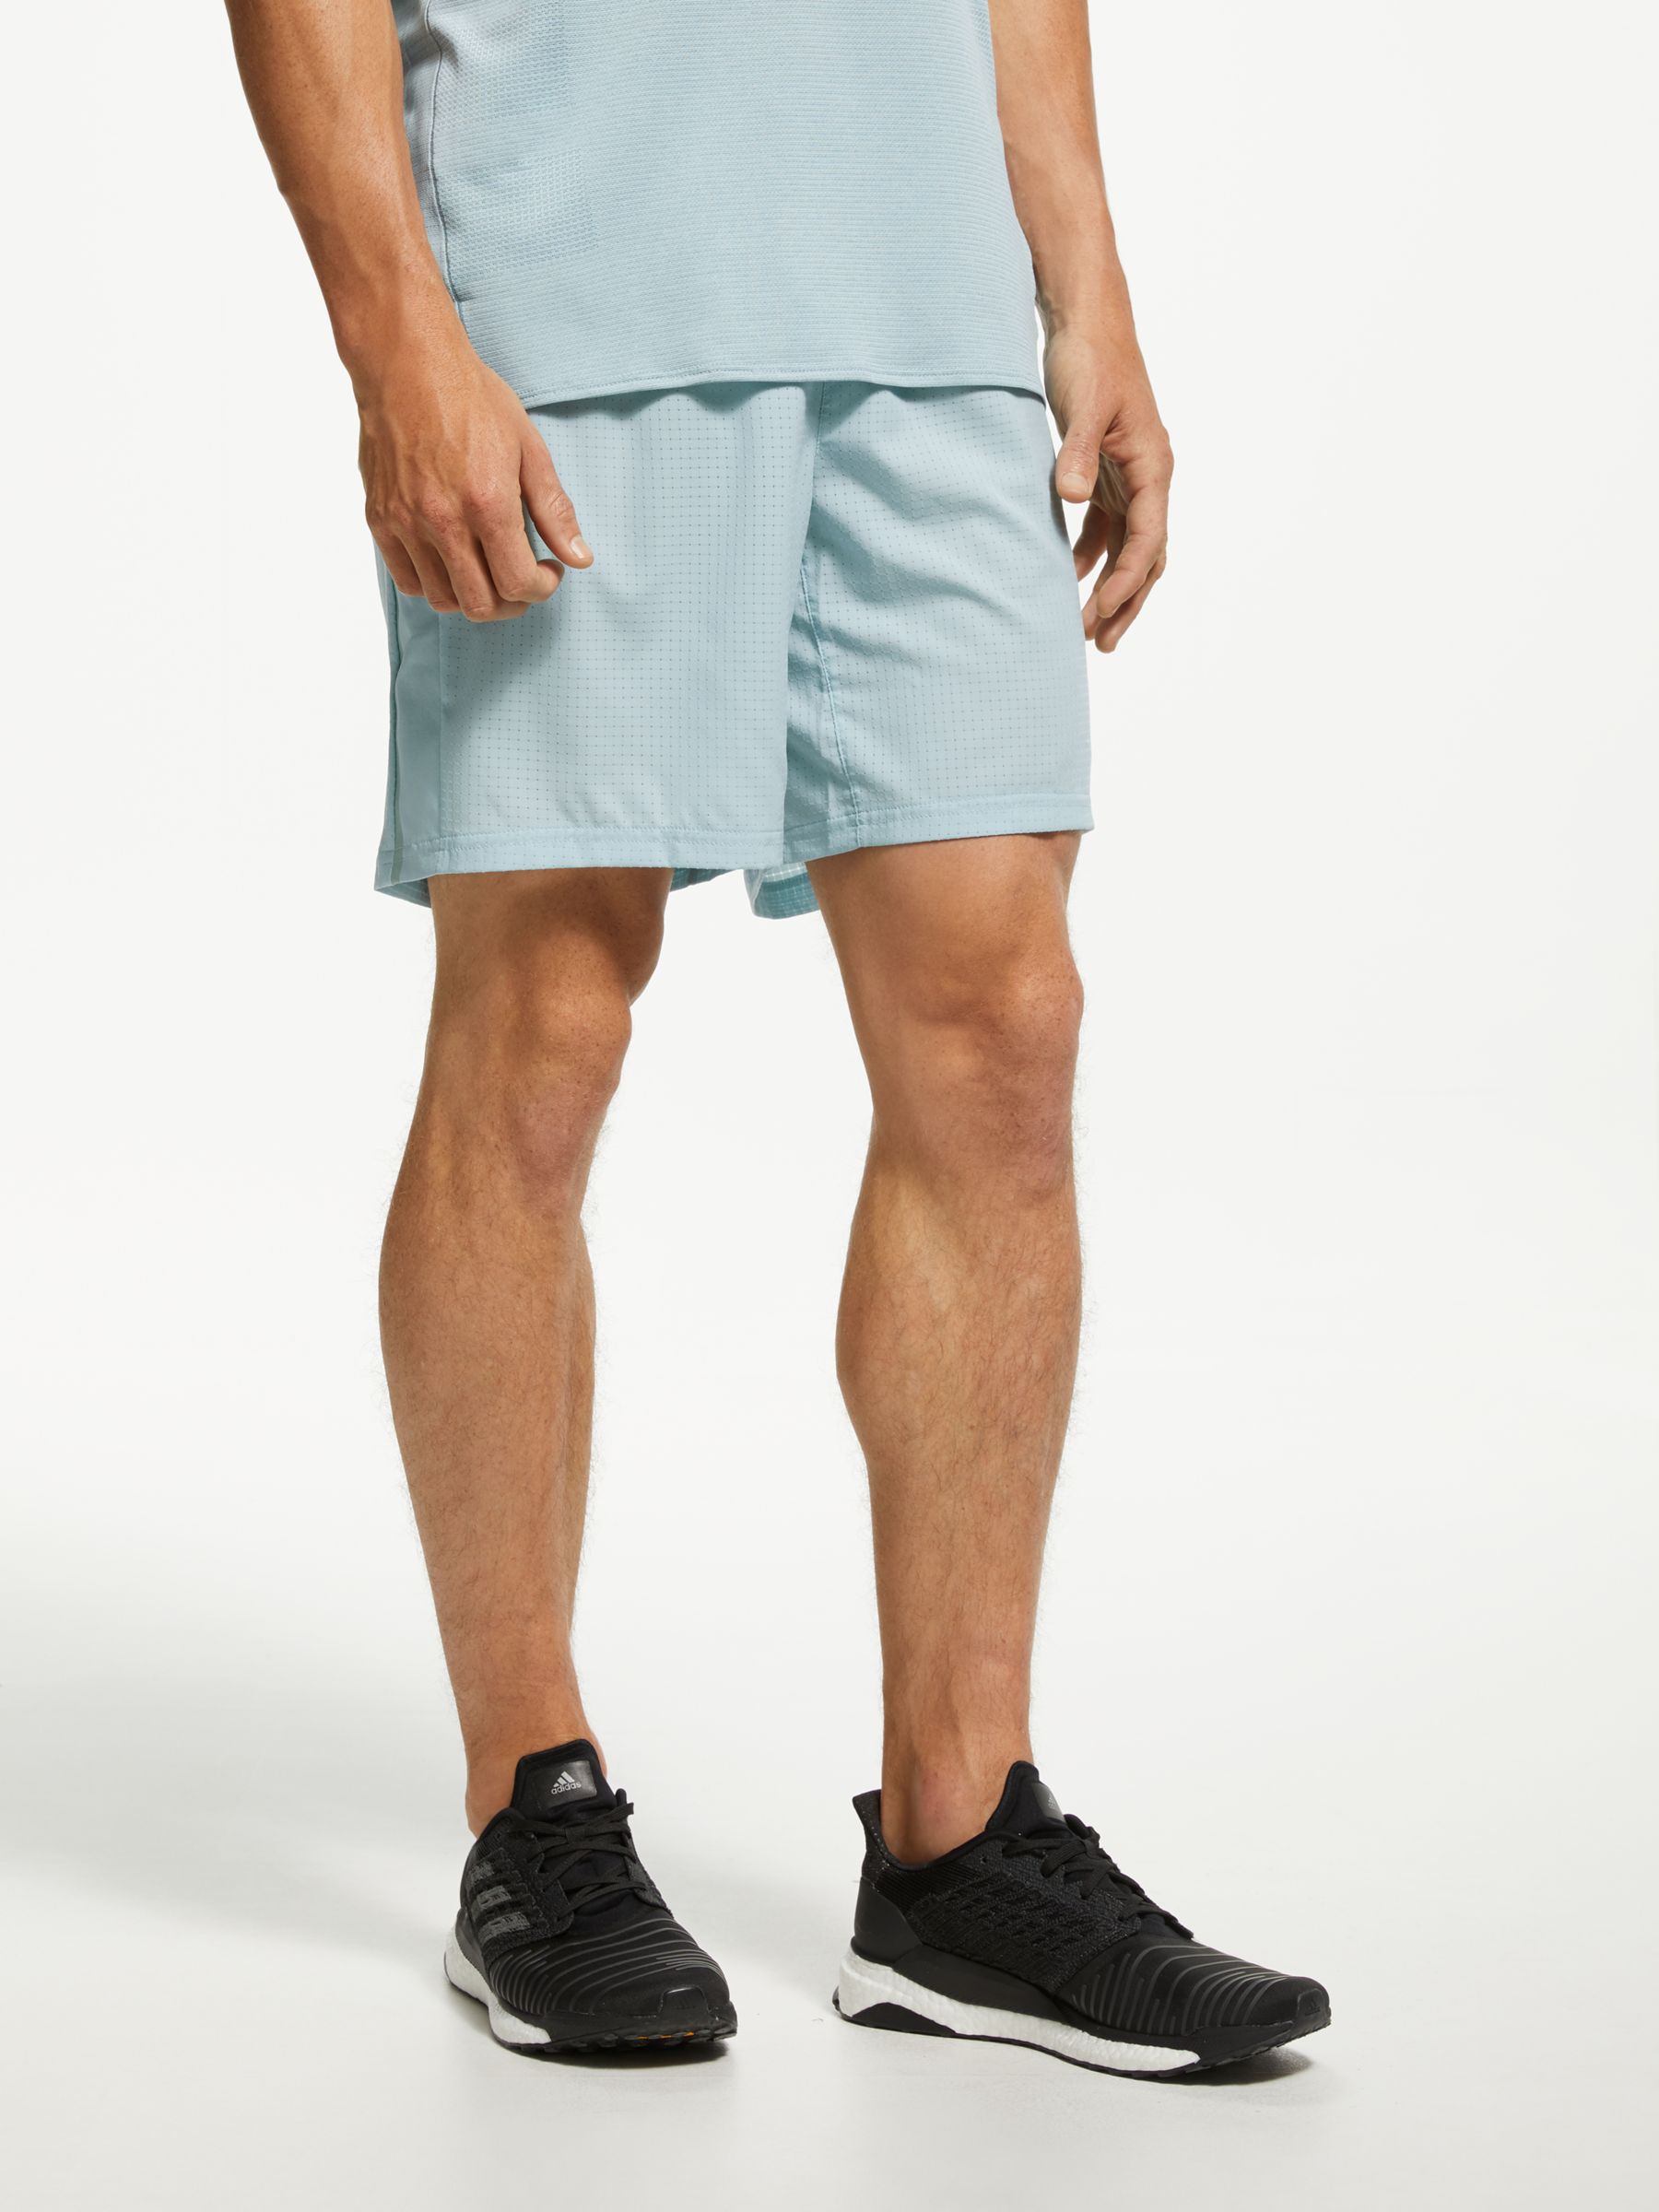 adidas men's supernova running shorts